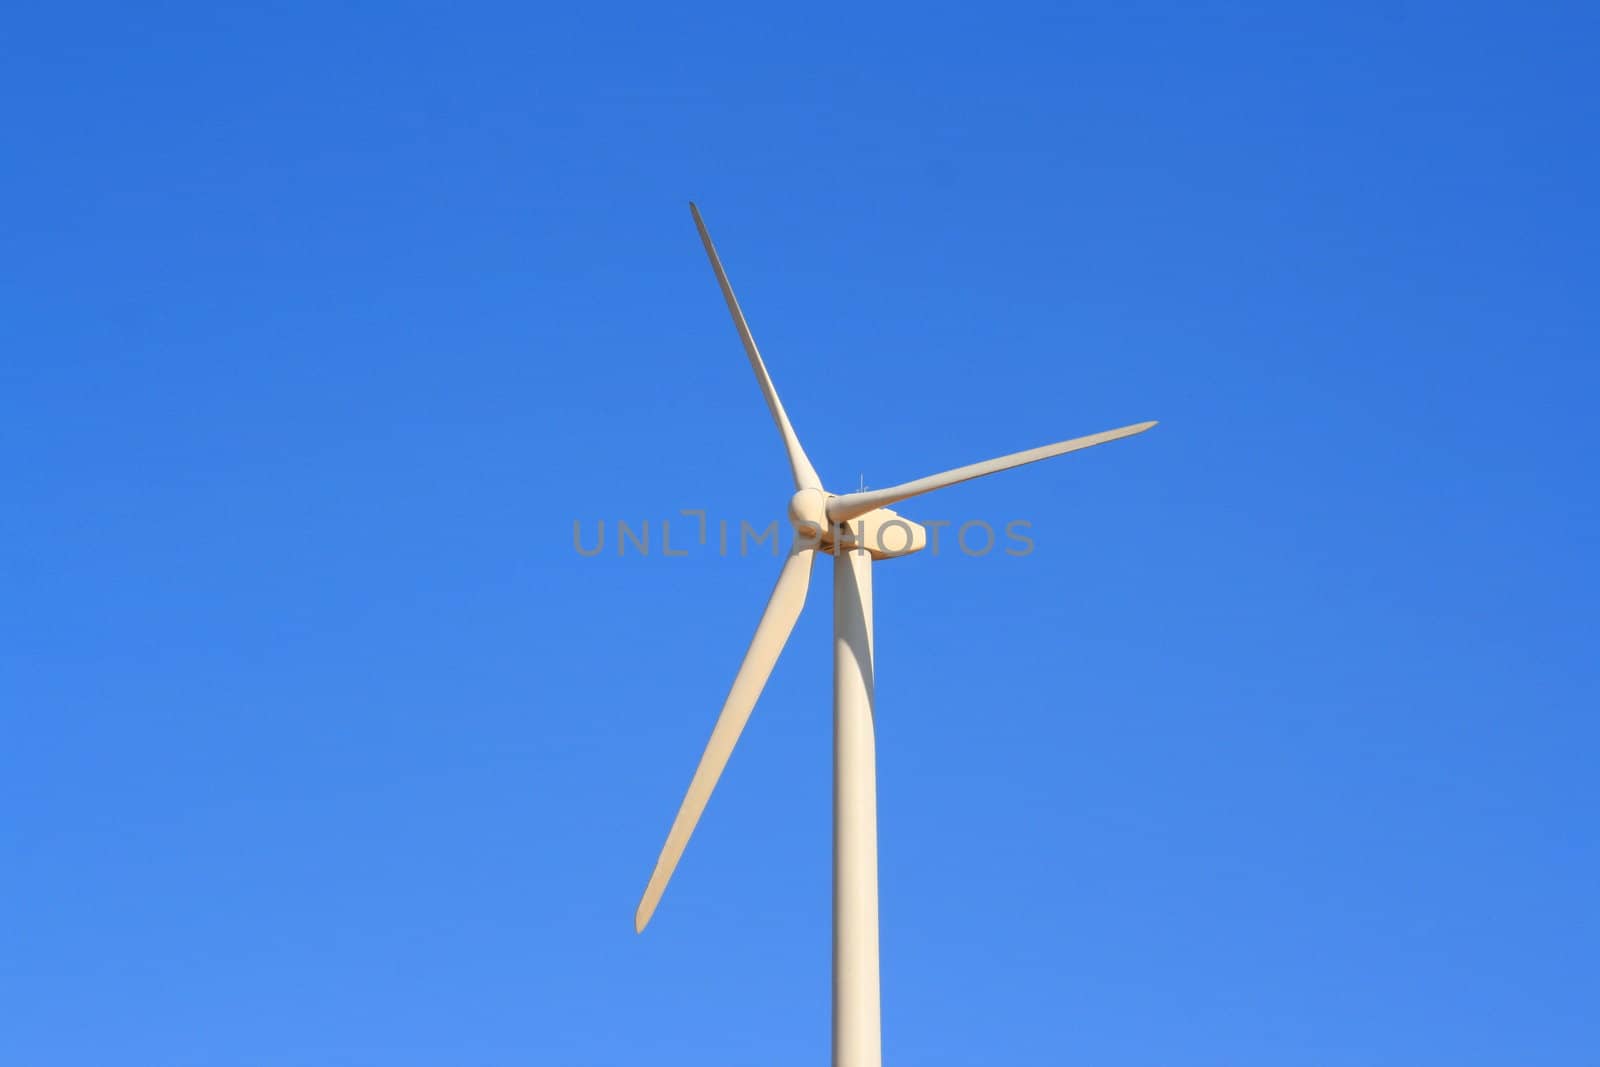 Close up of a wind turbine over blue sky.
